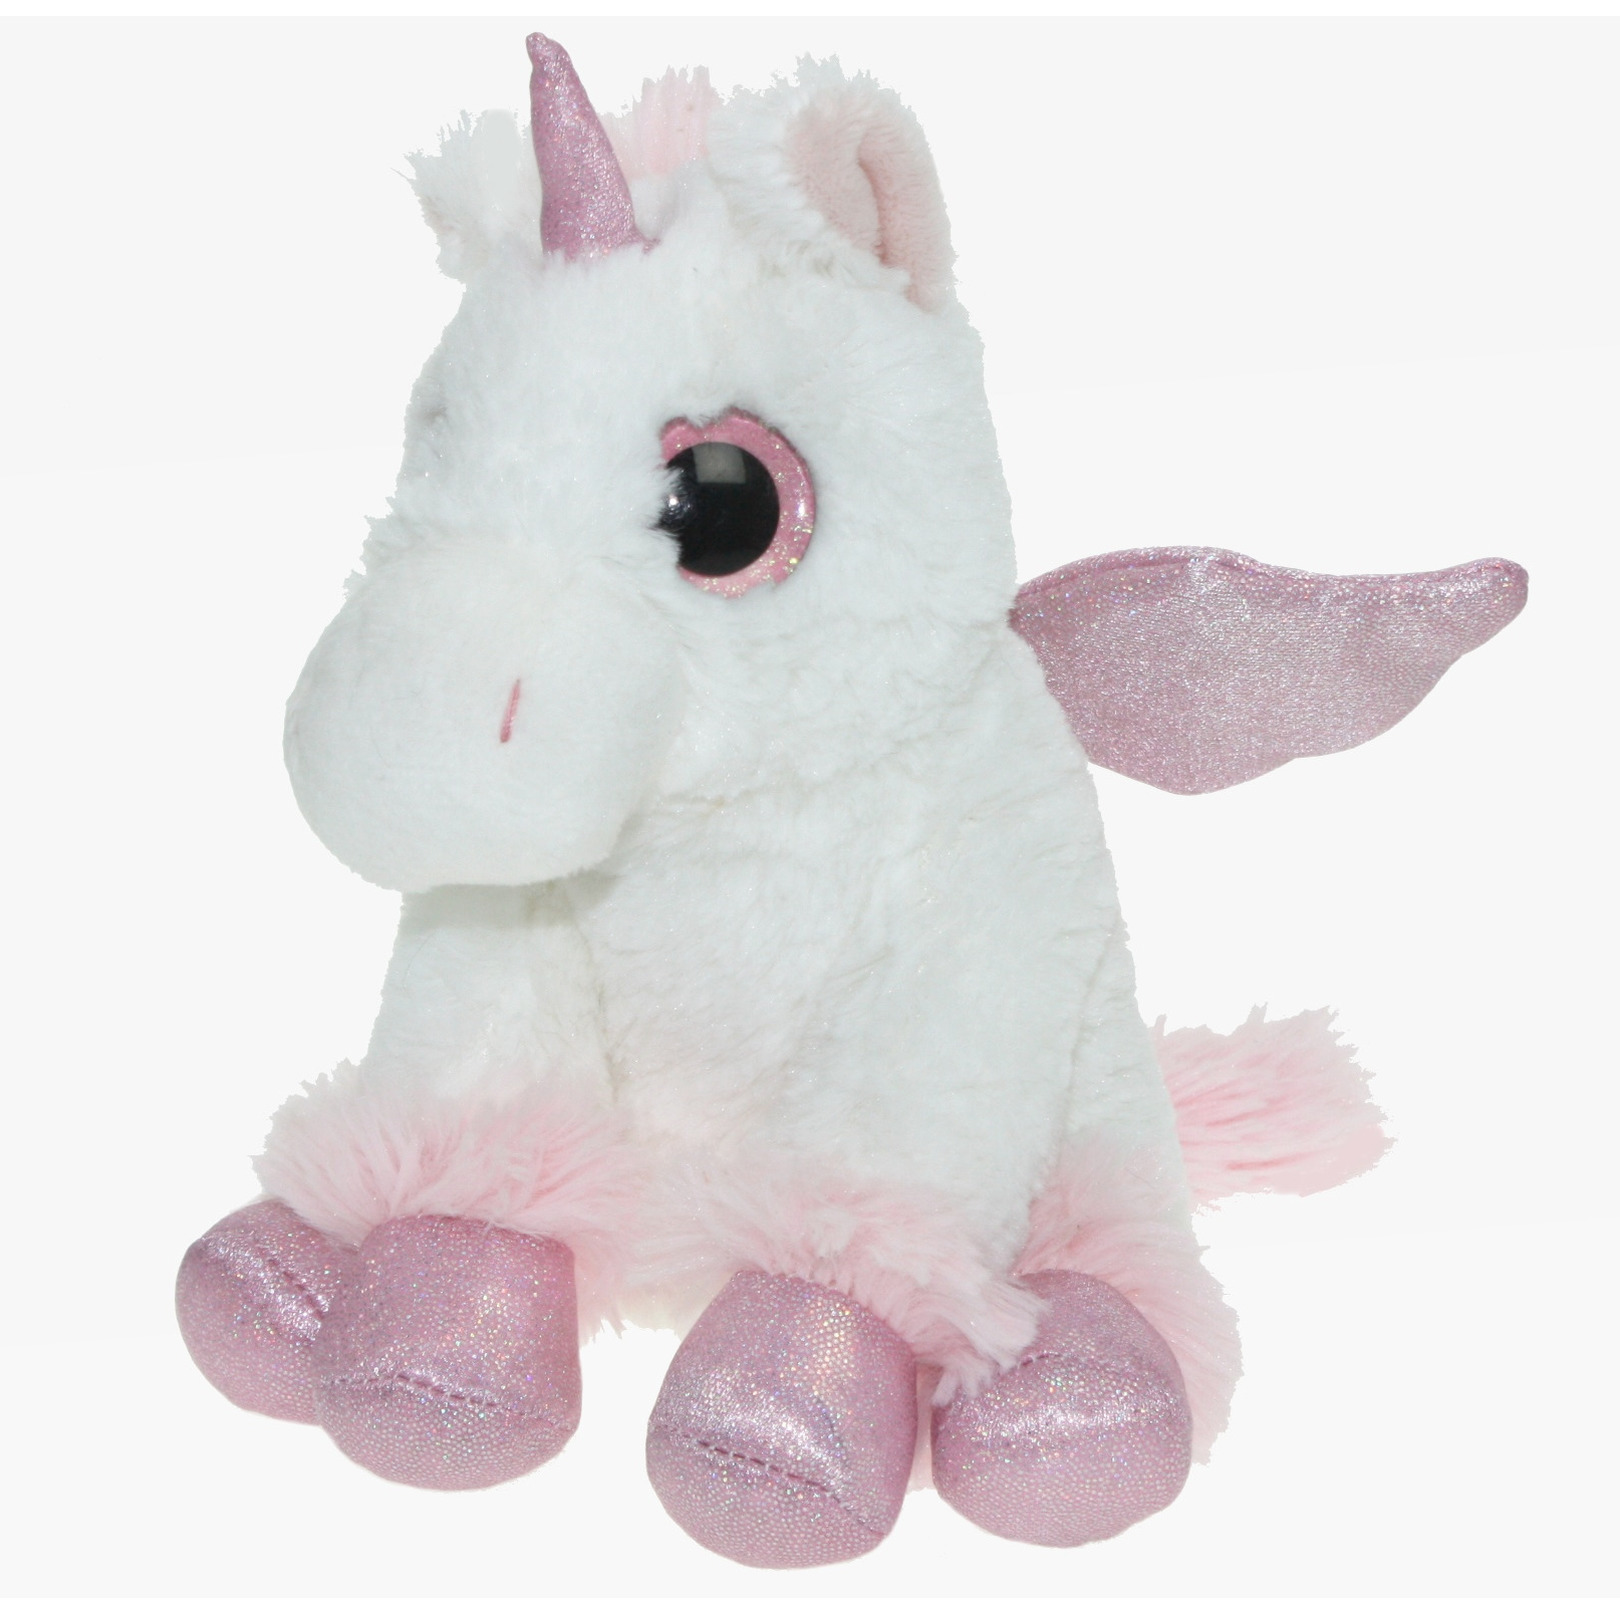 Pluche knuffel dieren Unicorn/eenhoorn wit/roze van 20 cm -